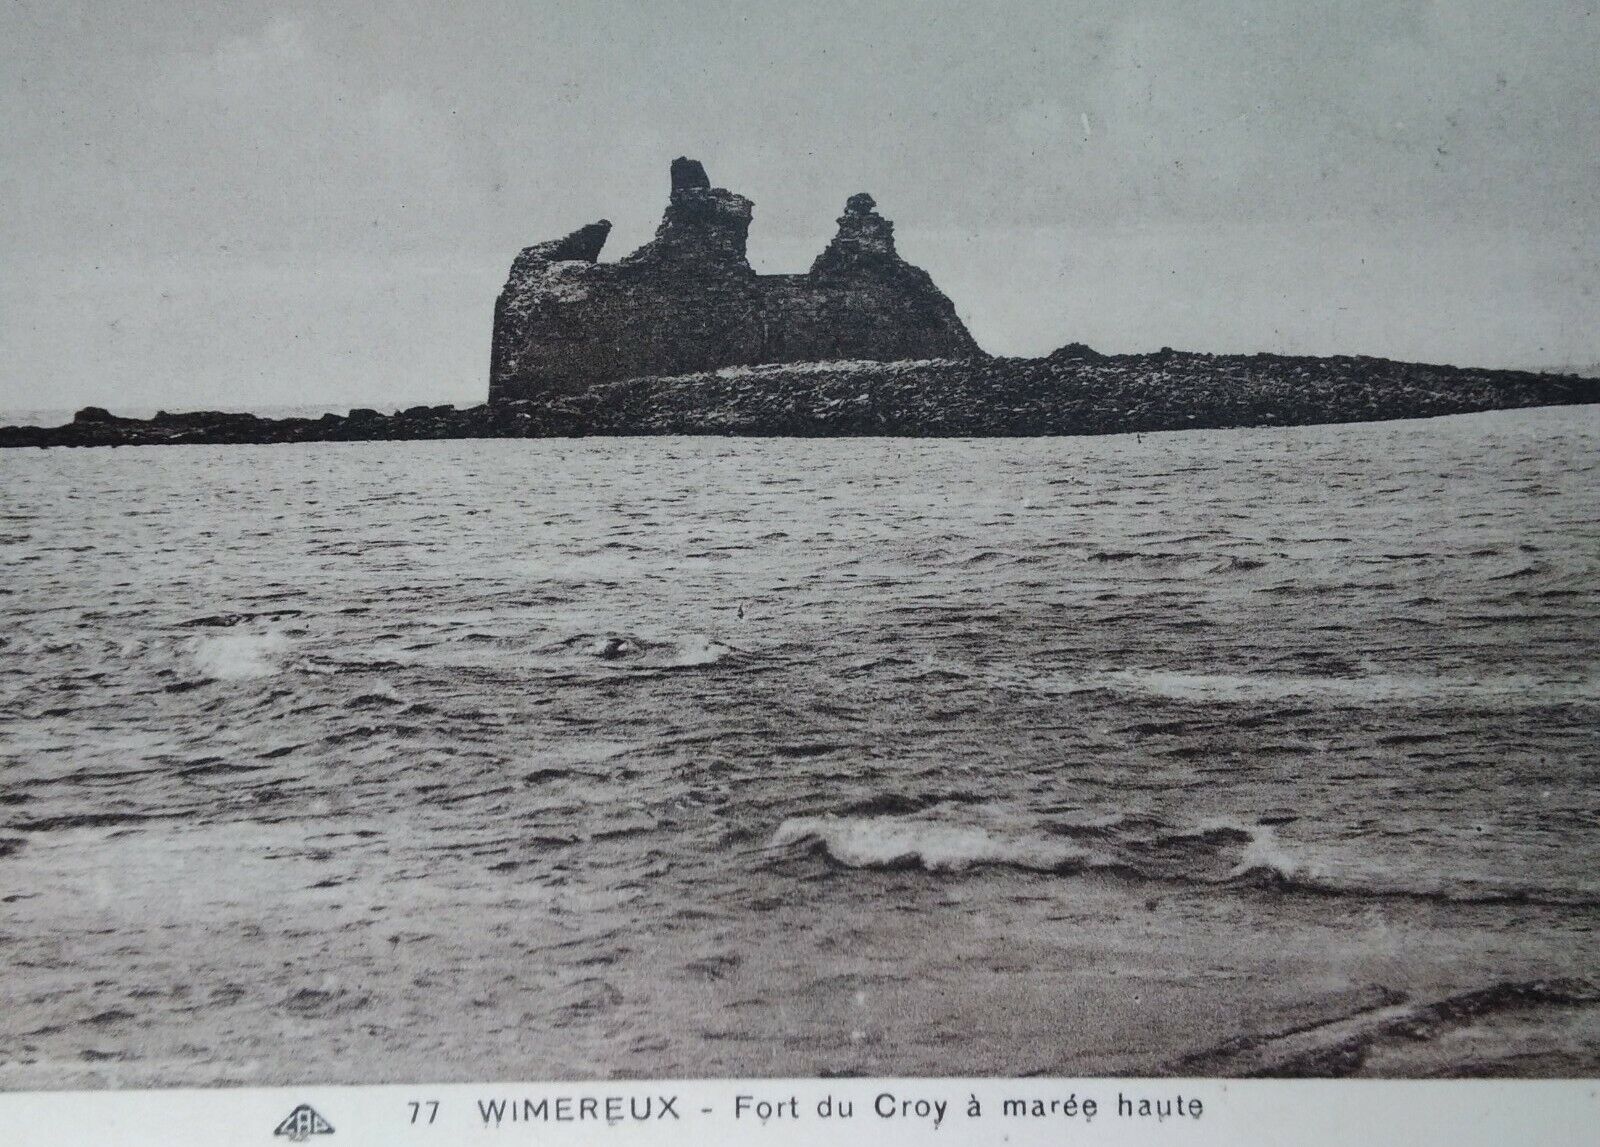 Wimereux France Antique Postcard Early 1900s Rare Fort du Croy High Tide 